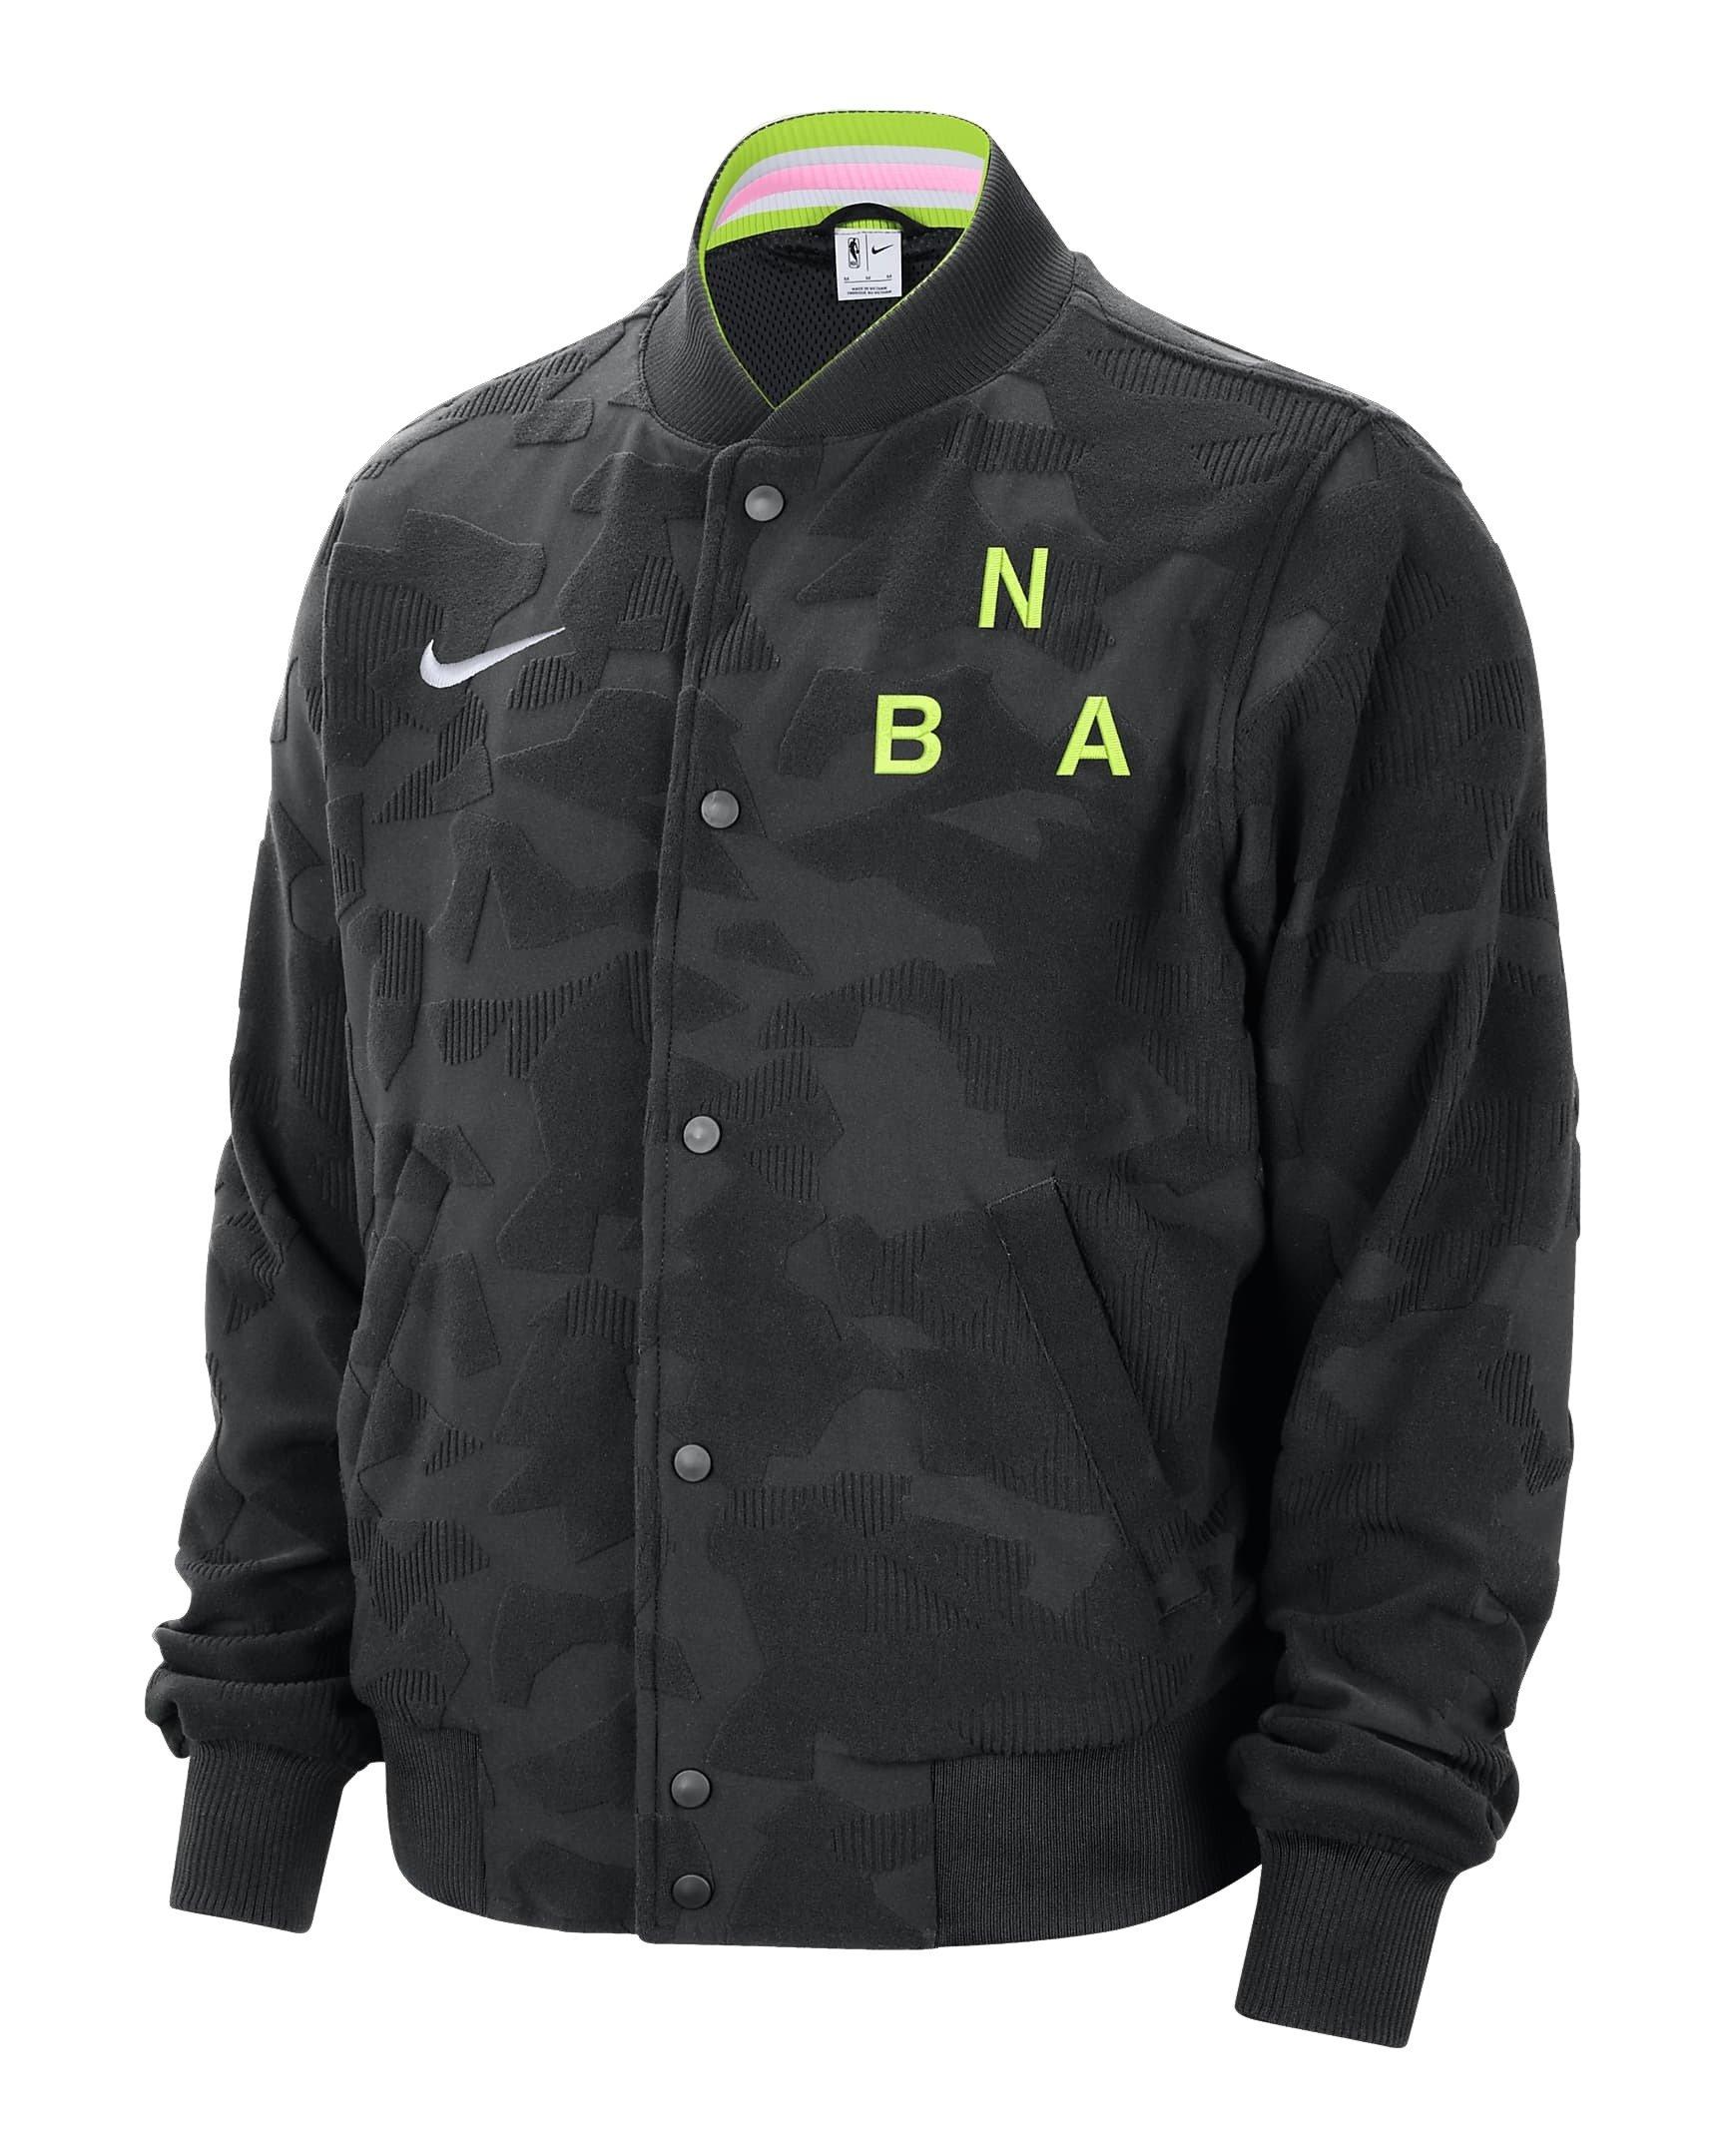 Nike Nba Jacket 